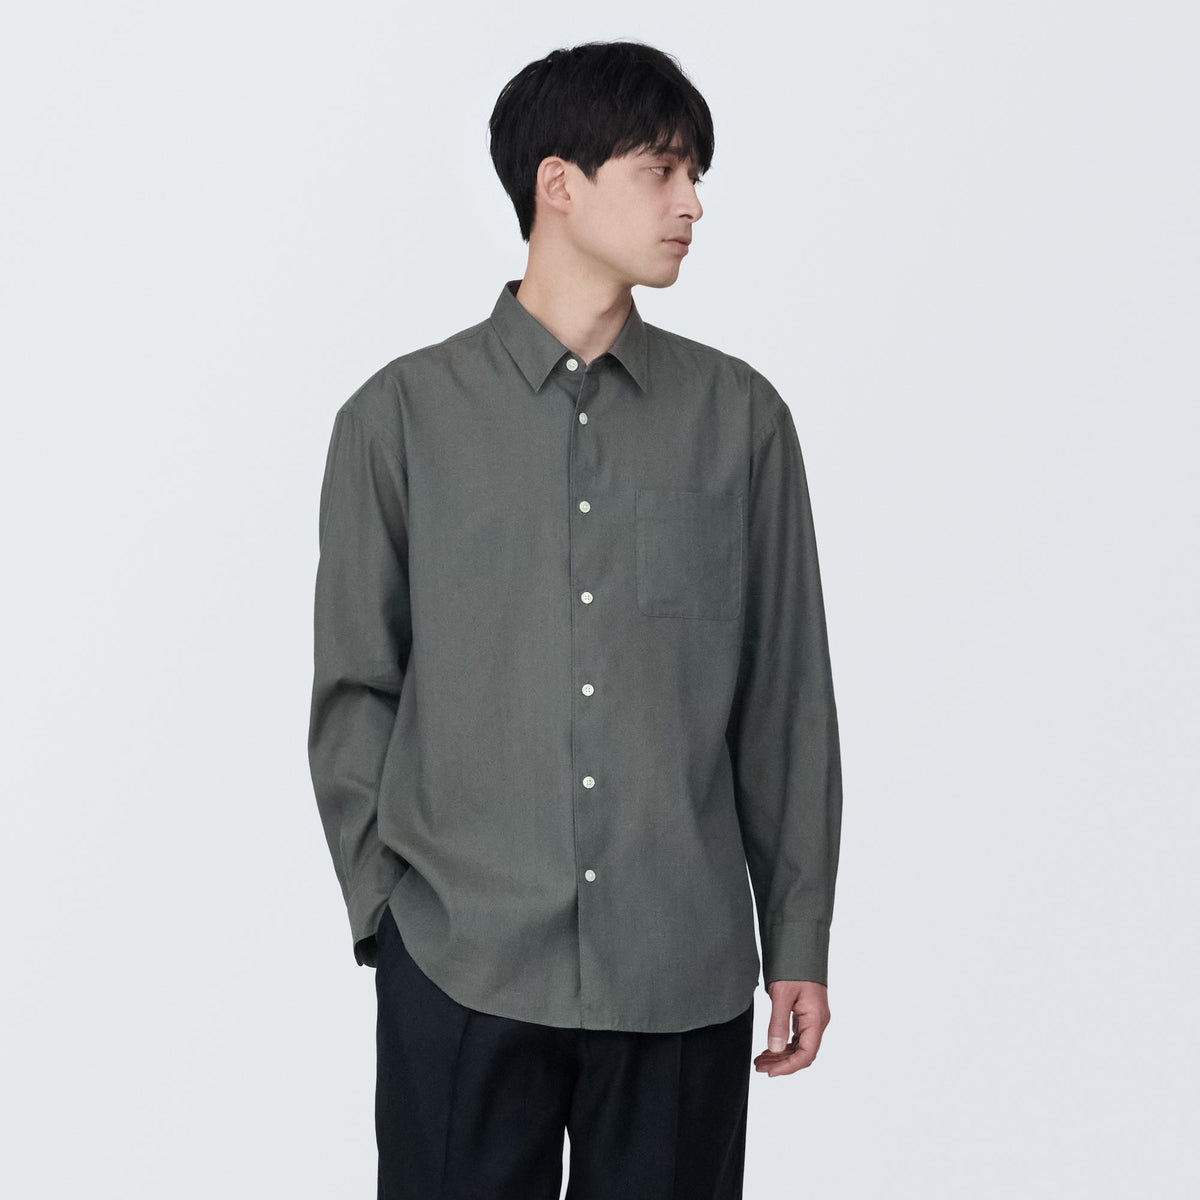 Men's Hemp Blend Long Sleeve Shirt | Hemp & Linen Clothing | MUJI USA